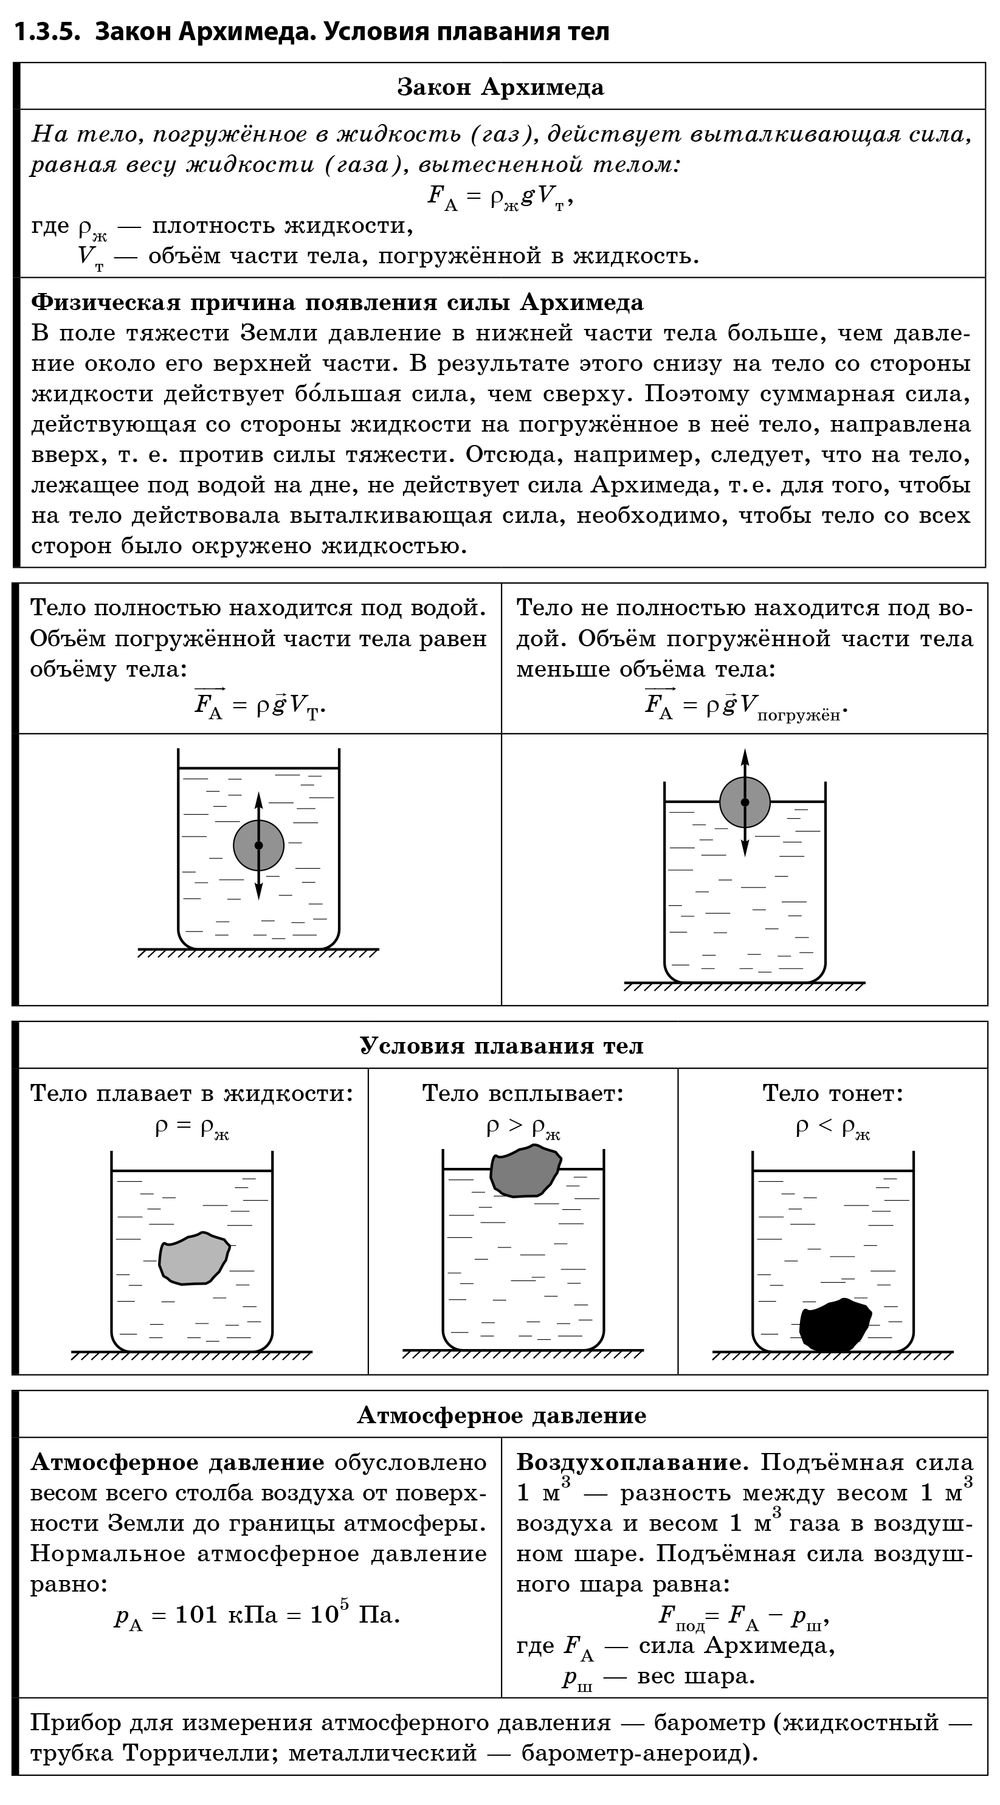 Физика плавание тел конспект кратко. Архимедова сила условия плавания тел 7 класс. Опорный конспект по теме сила Архимеда. Архимедова сила плавание тел формулы. Формулы архимедовой силы и условия плавания тел.